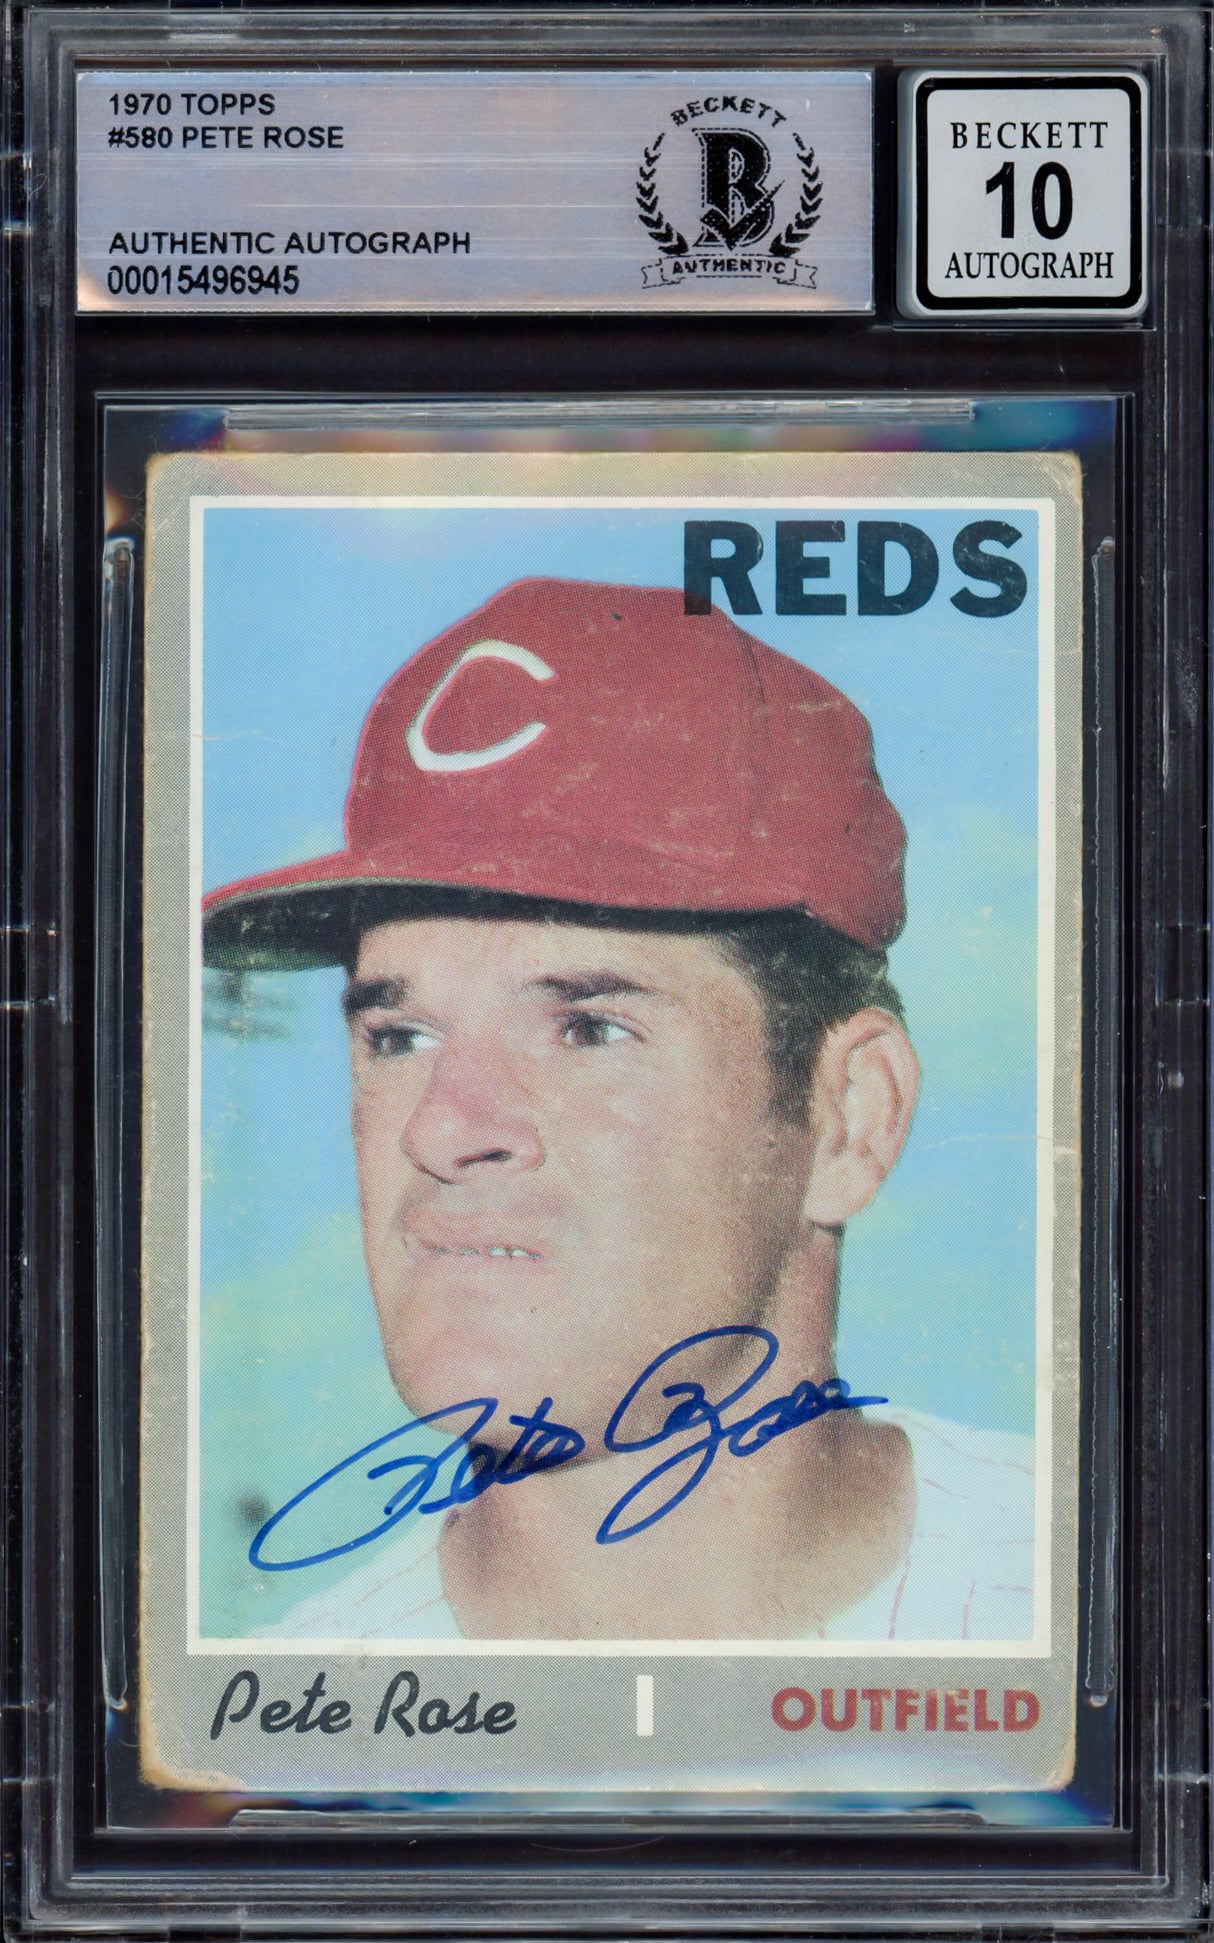 Pete Rose Autographed 1970 Topps Card #580 Cincinnati Reds Auto Grade Gem Mint 10 Beckett BAS #15496945